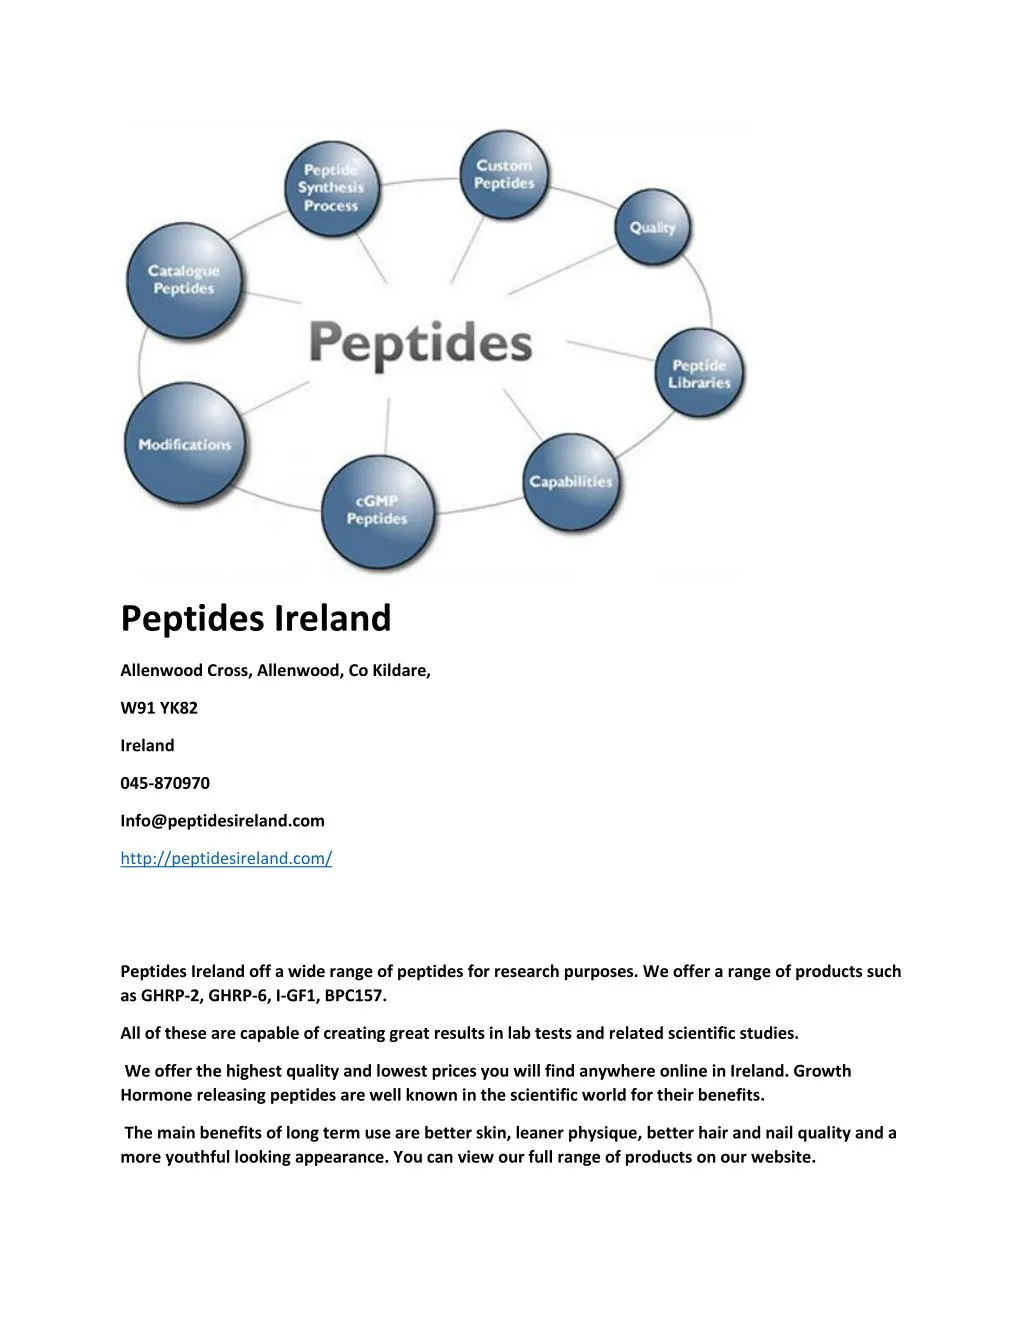 peptides ireland